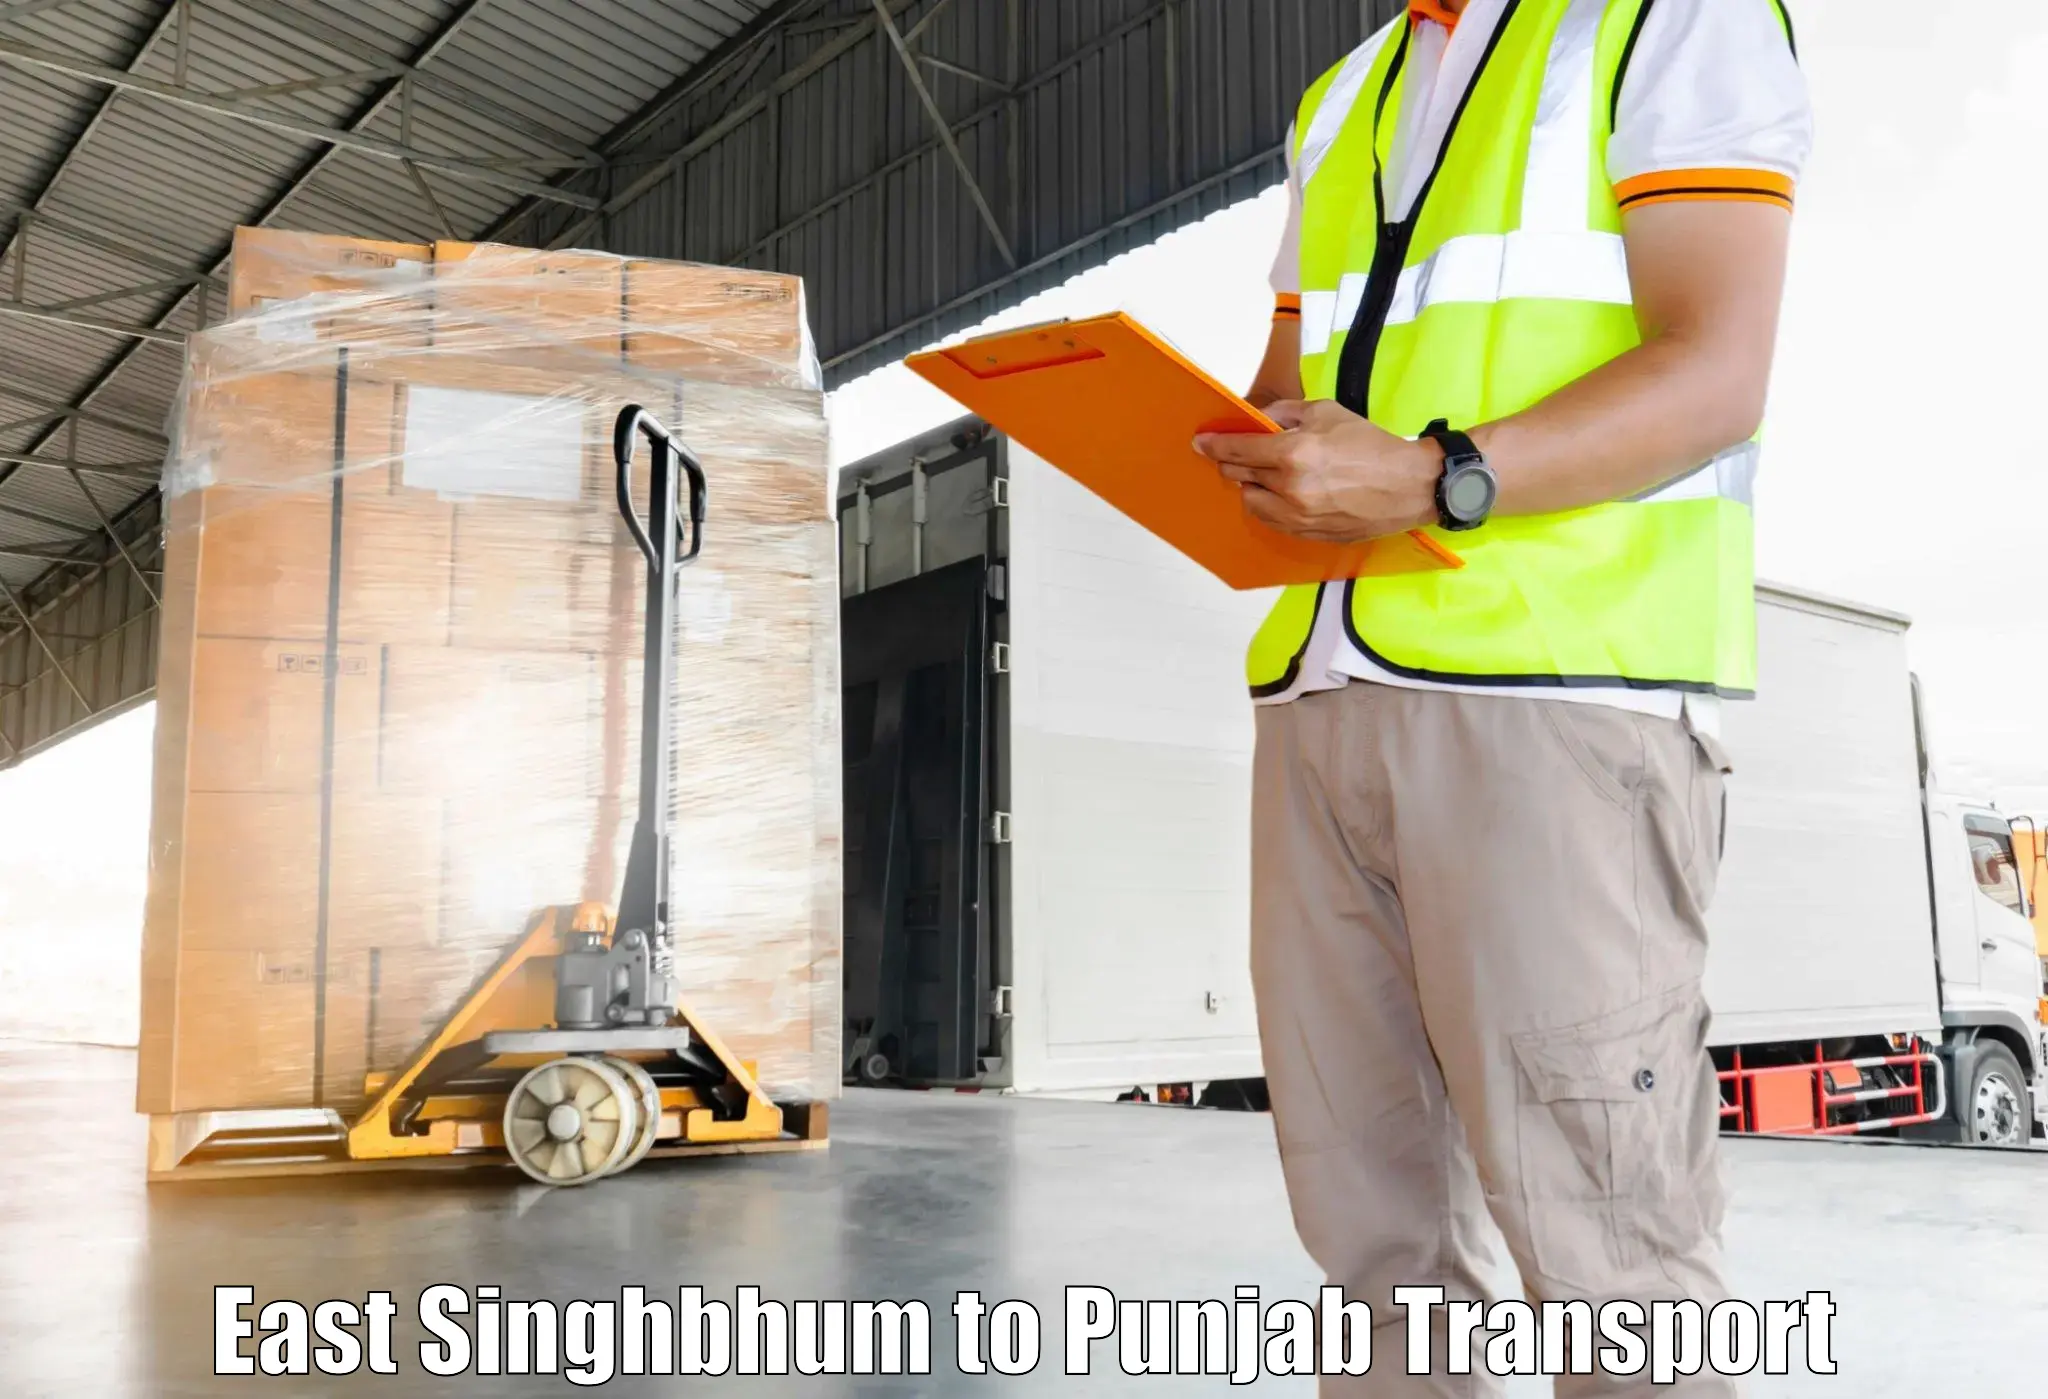 Interstate transport services East Singhbhum to Sirhind Fatehgarh